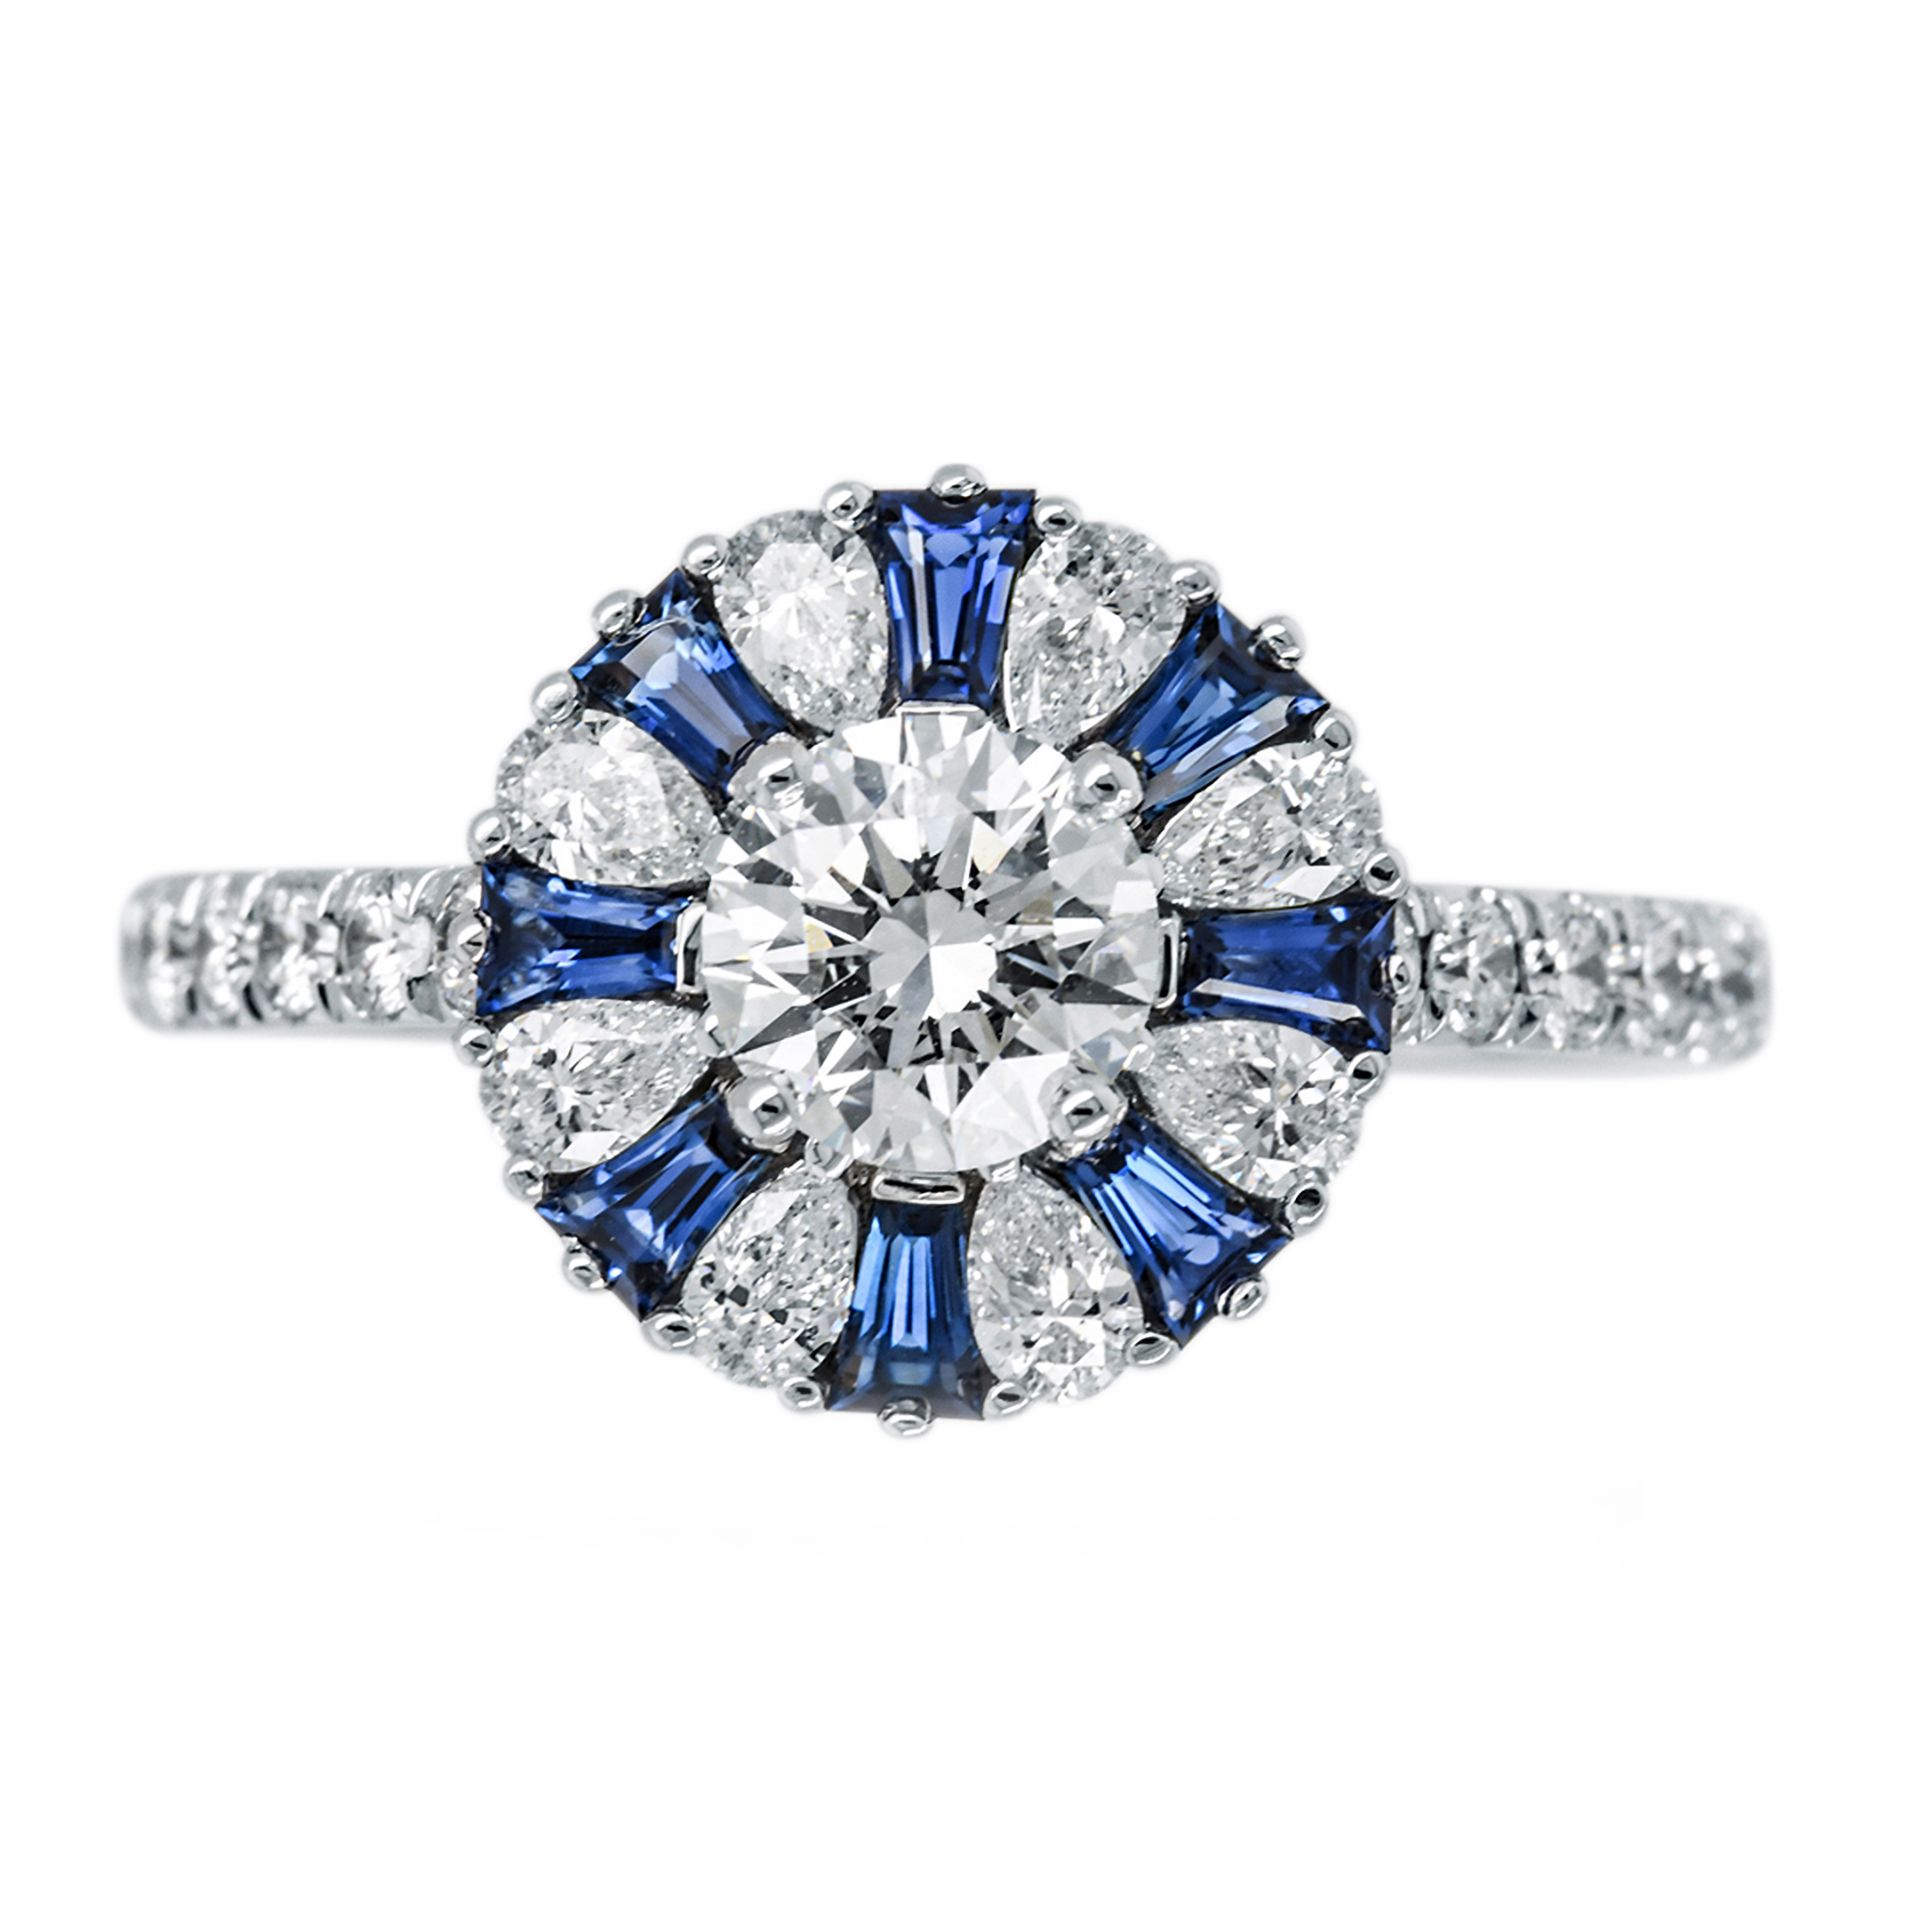 Verlobungsring 18 Karat Weißgold und Diamanten | Engagement Ring 18 Karat White Gold und Diamonds - Image 4 of 4